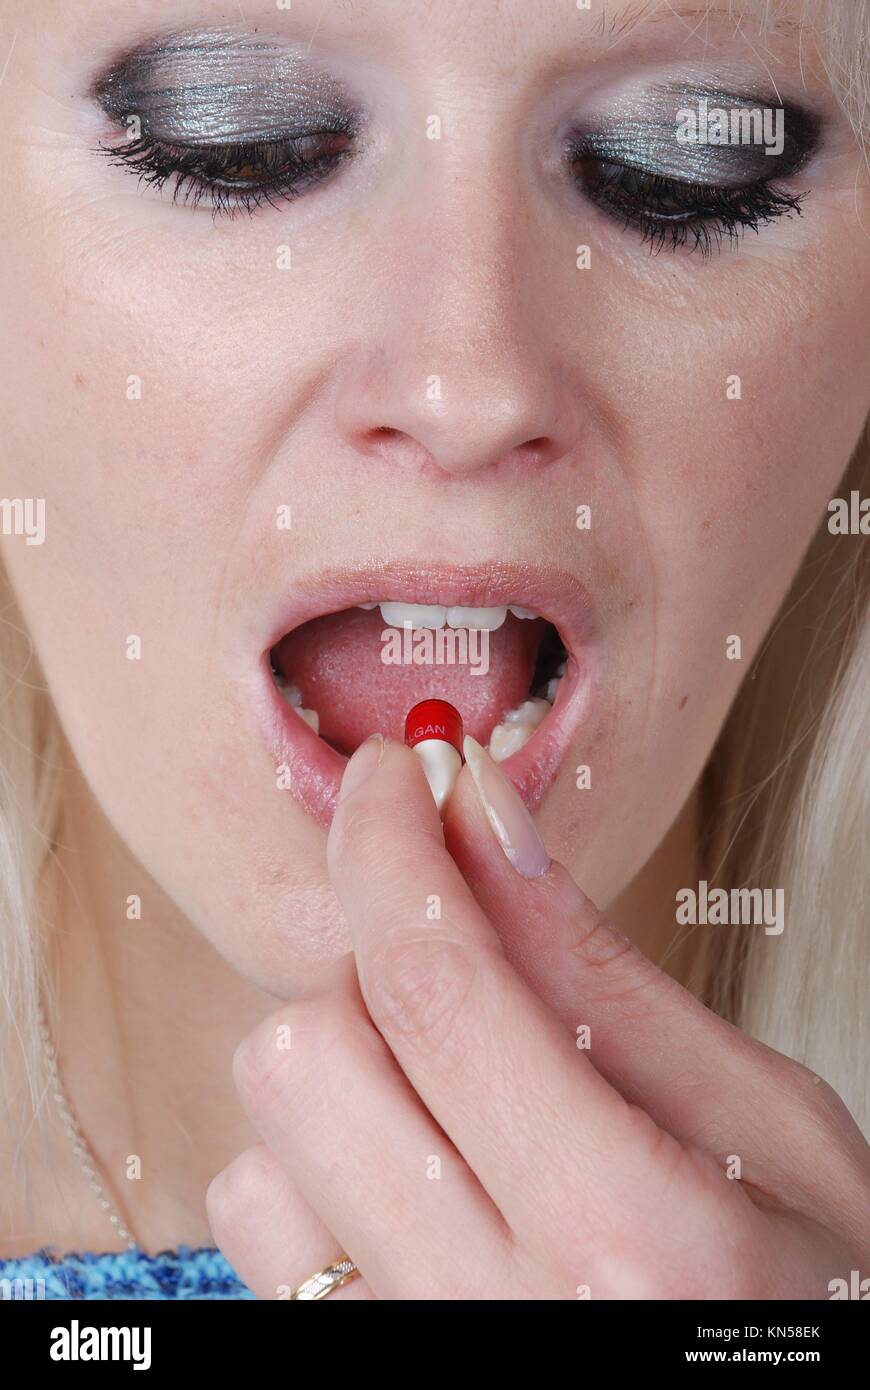 Mujer sosteniendo un analgésico entre los dedos. Foto de stock